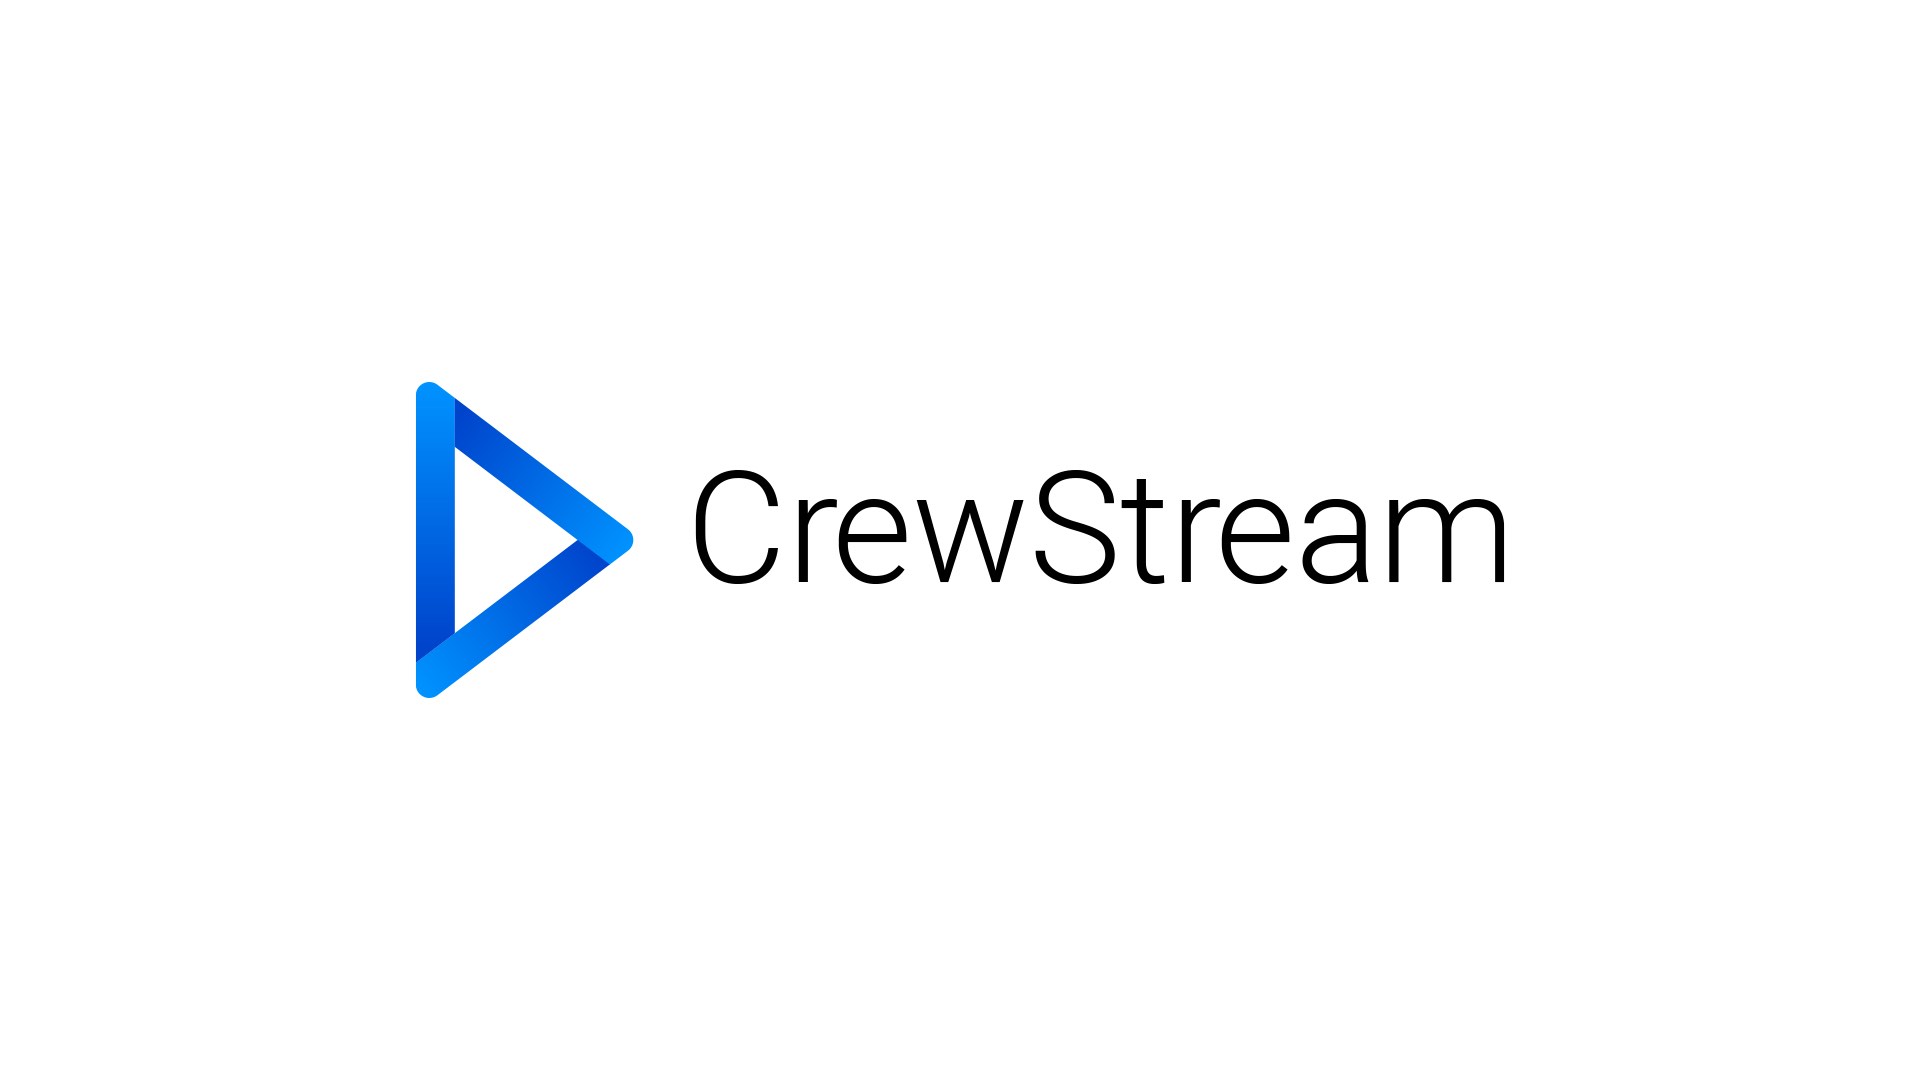 Introducing CrewStream